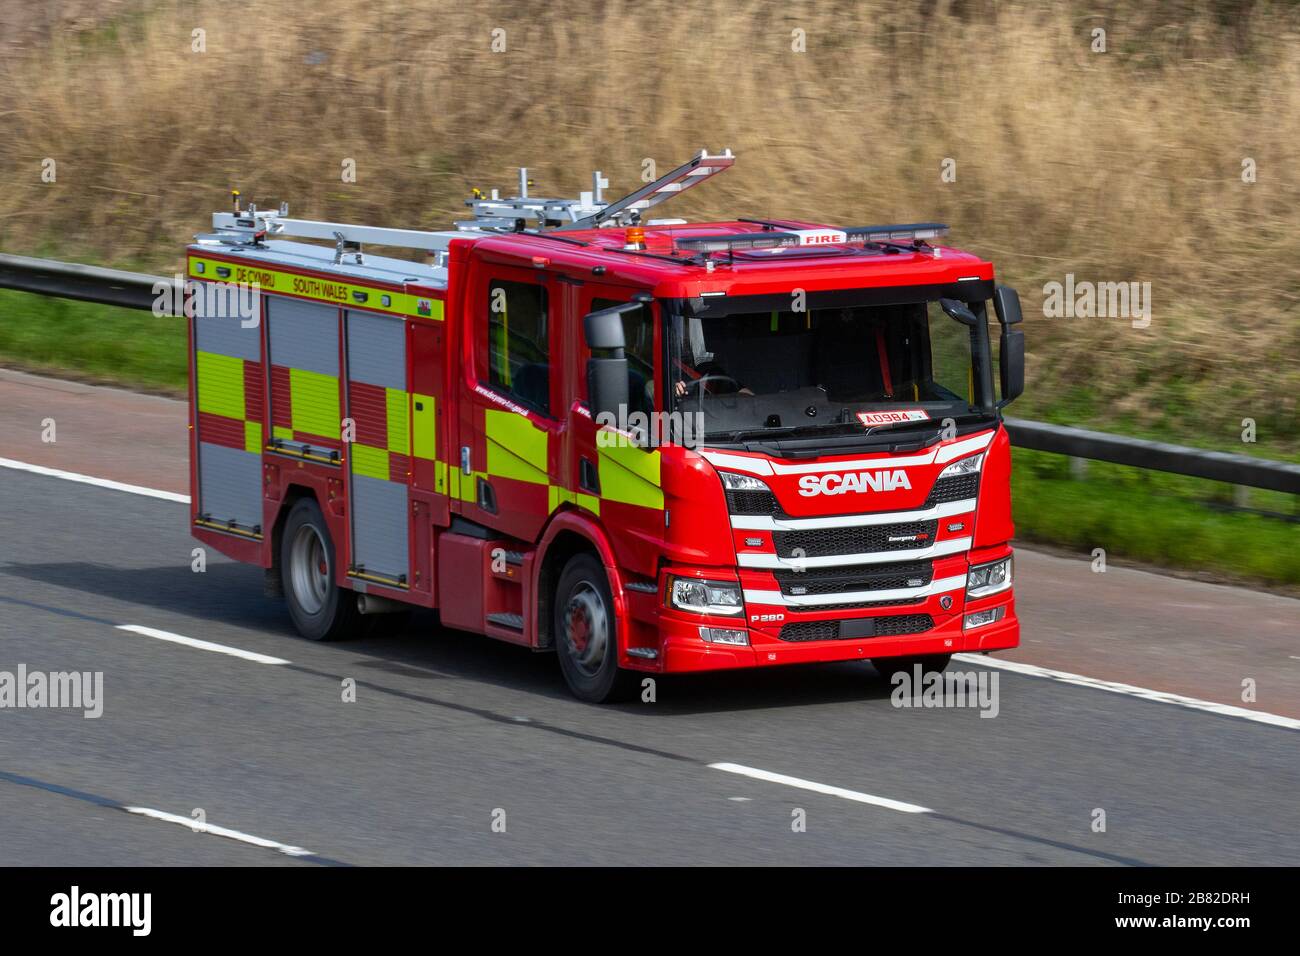 Targhe sul nuovo camion del Galles del Sud, gara d'appalto, servizi di emergenza, VEICOLO di soccorso SCANIA sulla m6 Motorway a Lancaster, Regno Unito Foto Stock